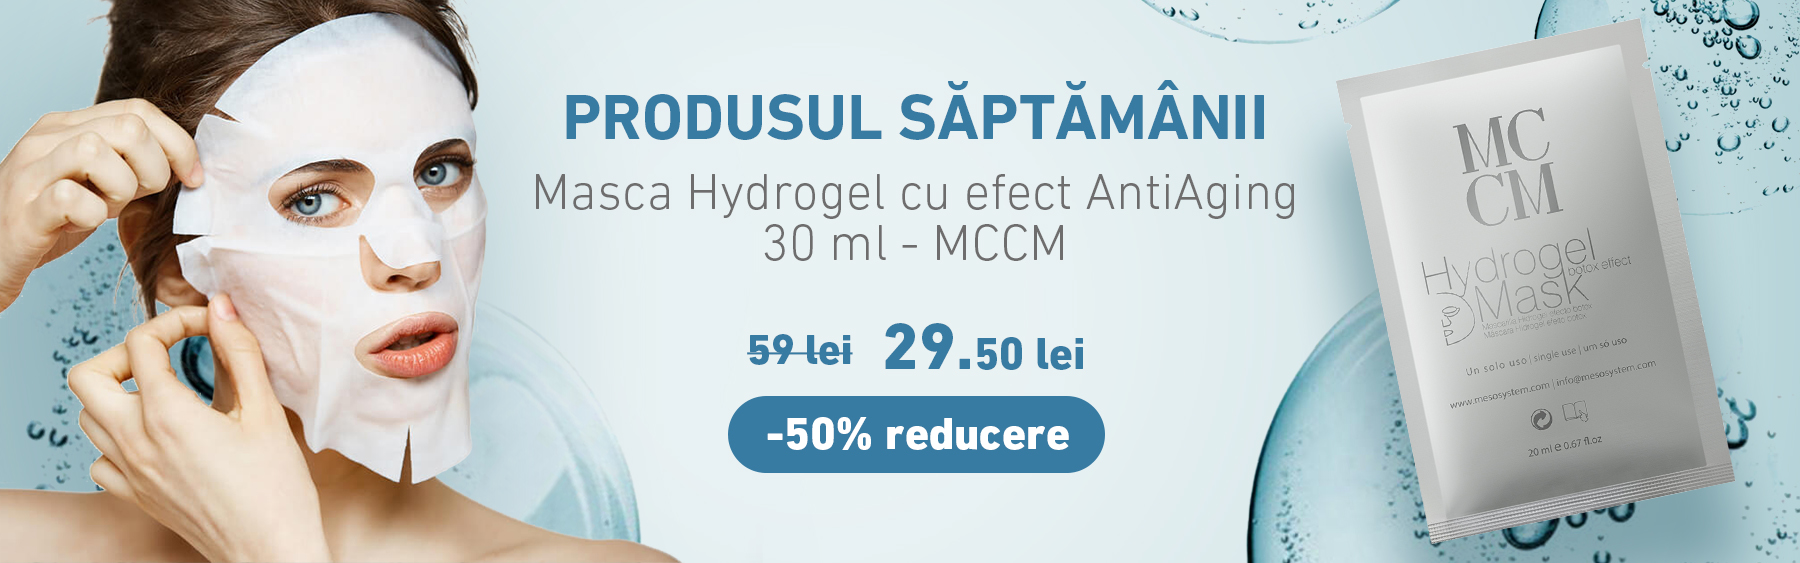 Masca Hydrogel cu efect AntiAging - 30 ml - MCCM cu -50% reducere